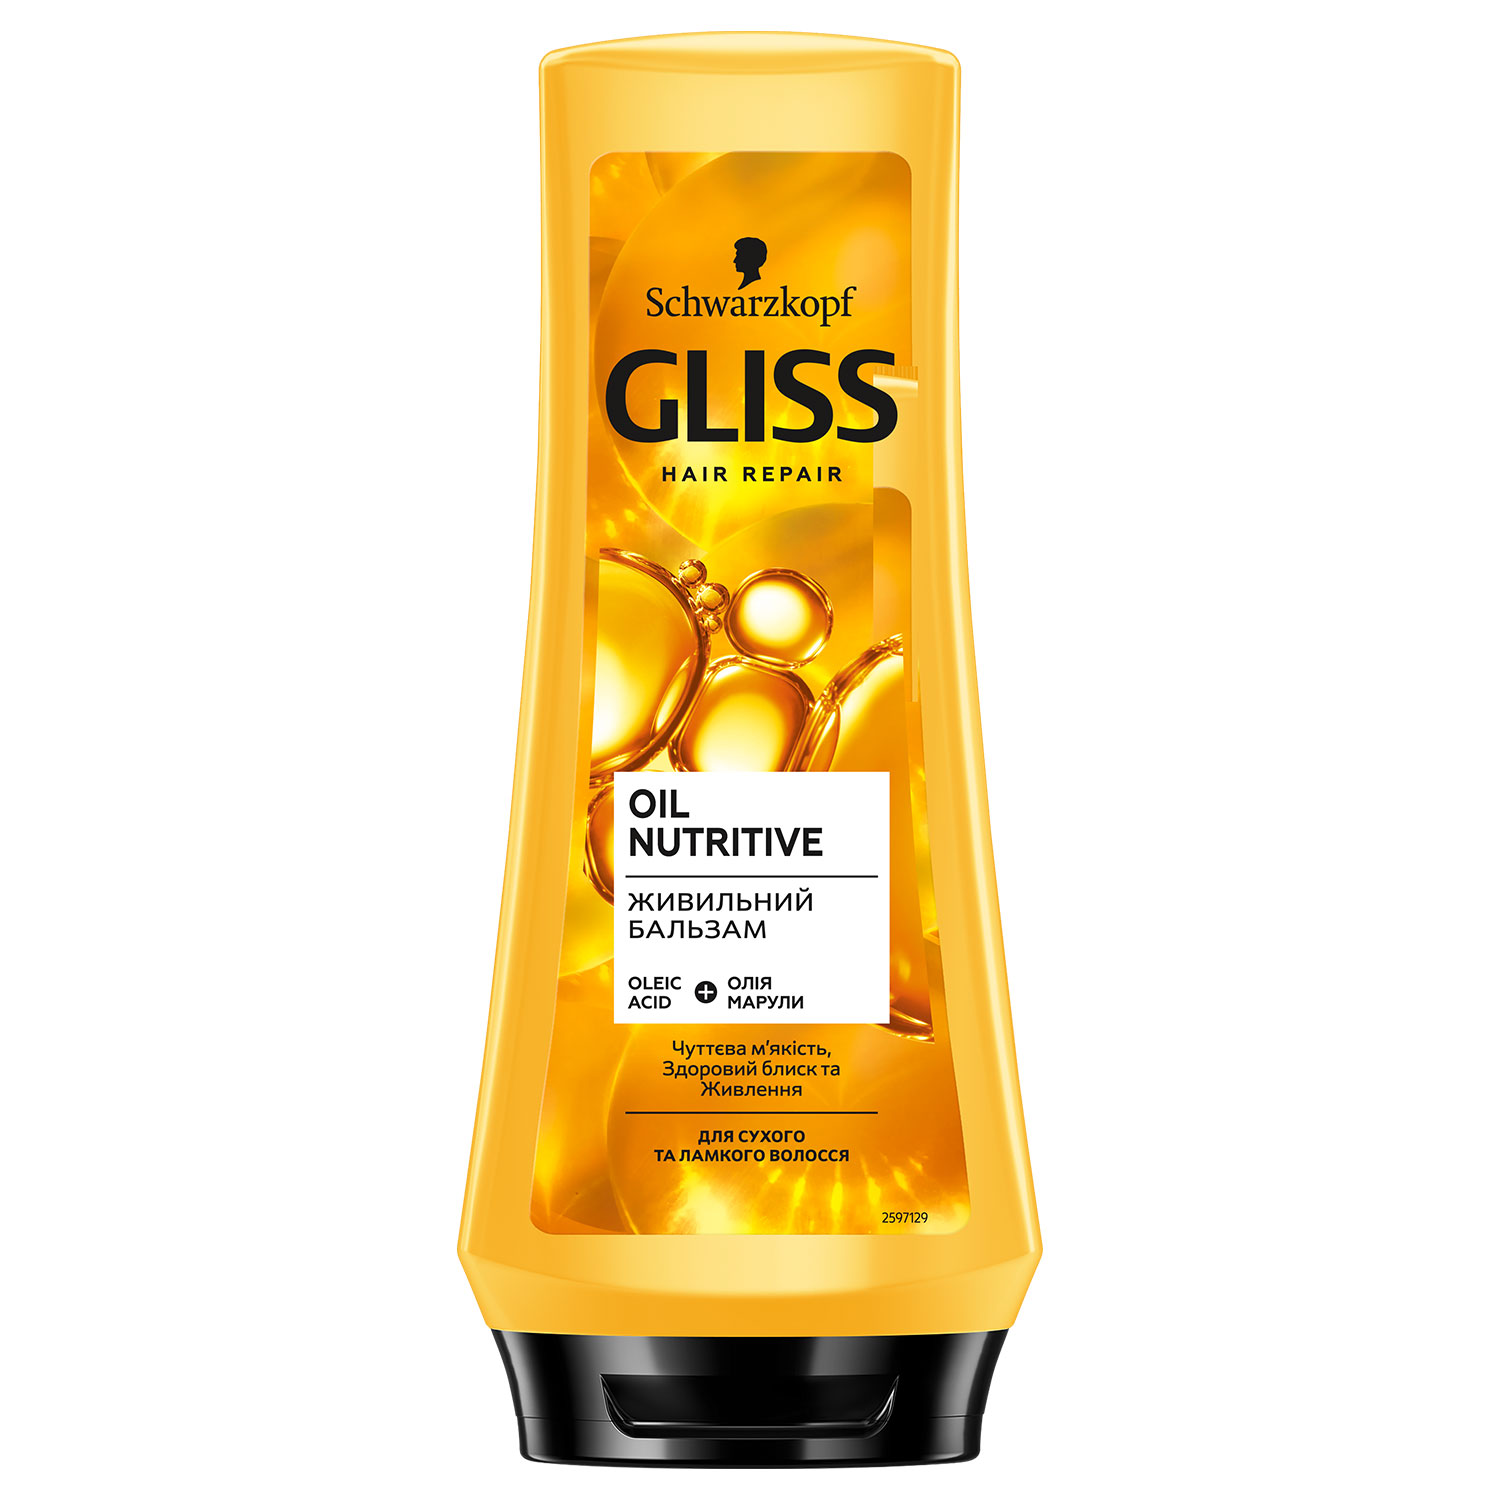 Питательный бальзам GLISS Oil Nutritive для сухих и поврежденных волос, 200 мл